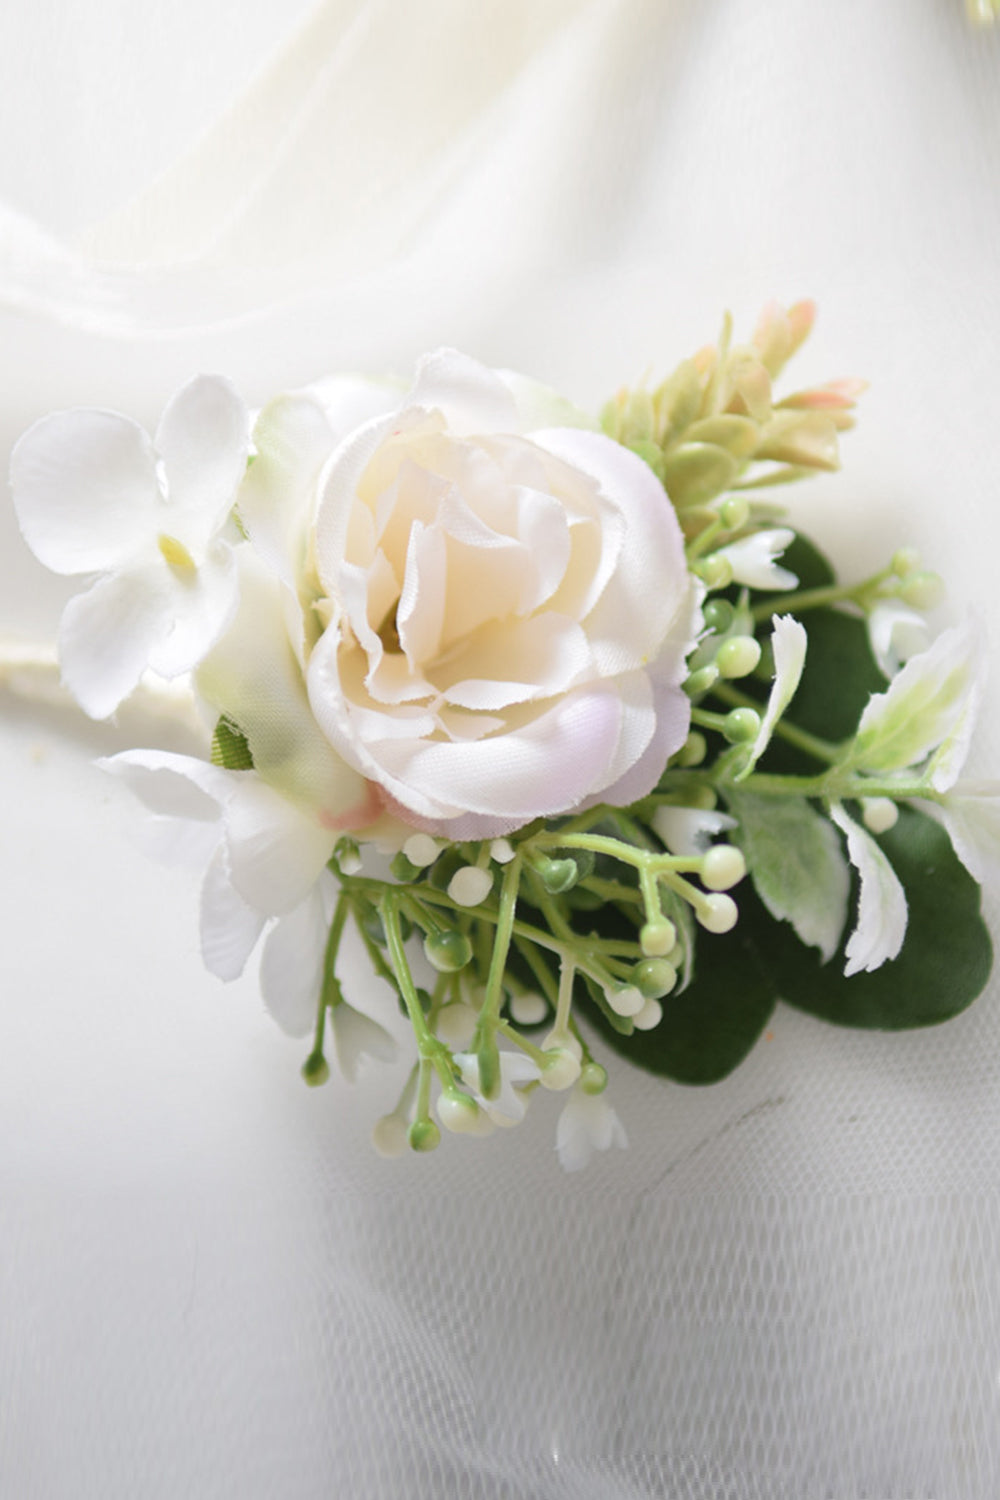 Vit konstgjord ros bröllop handled corsage